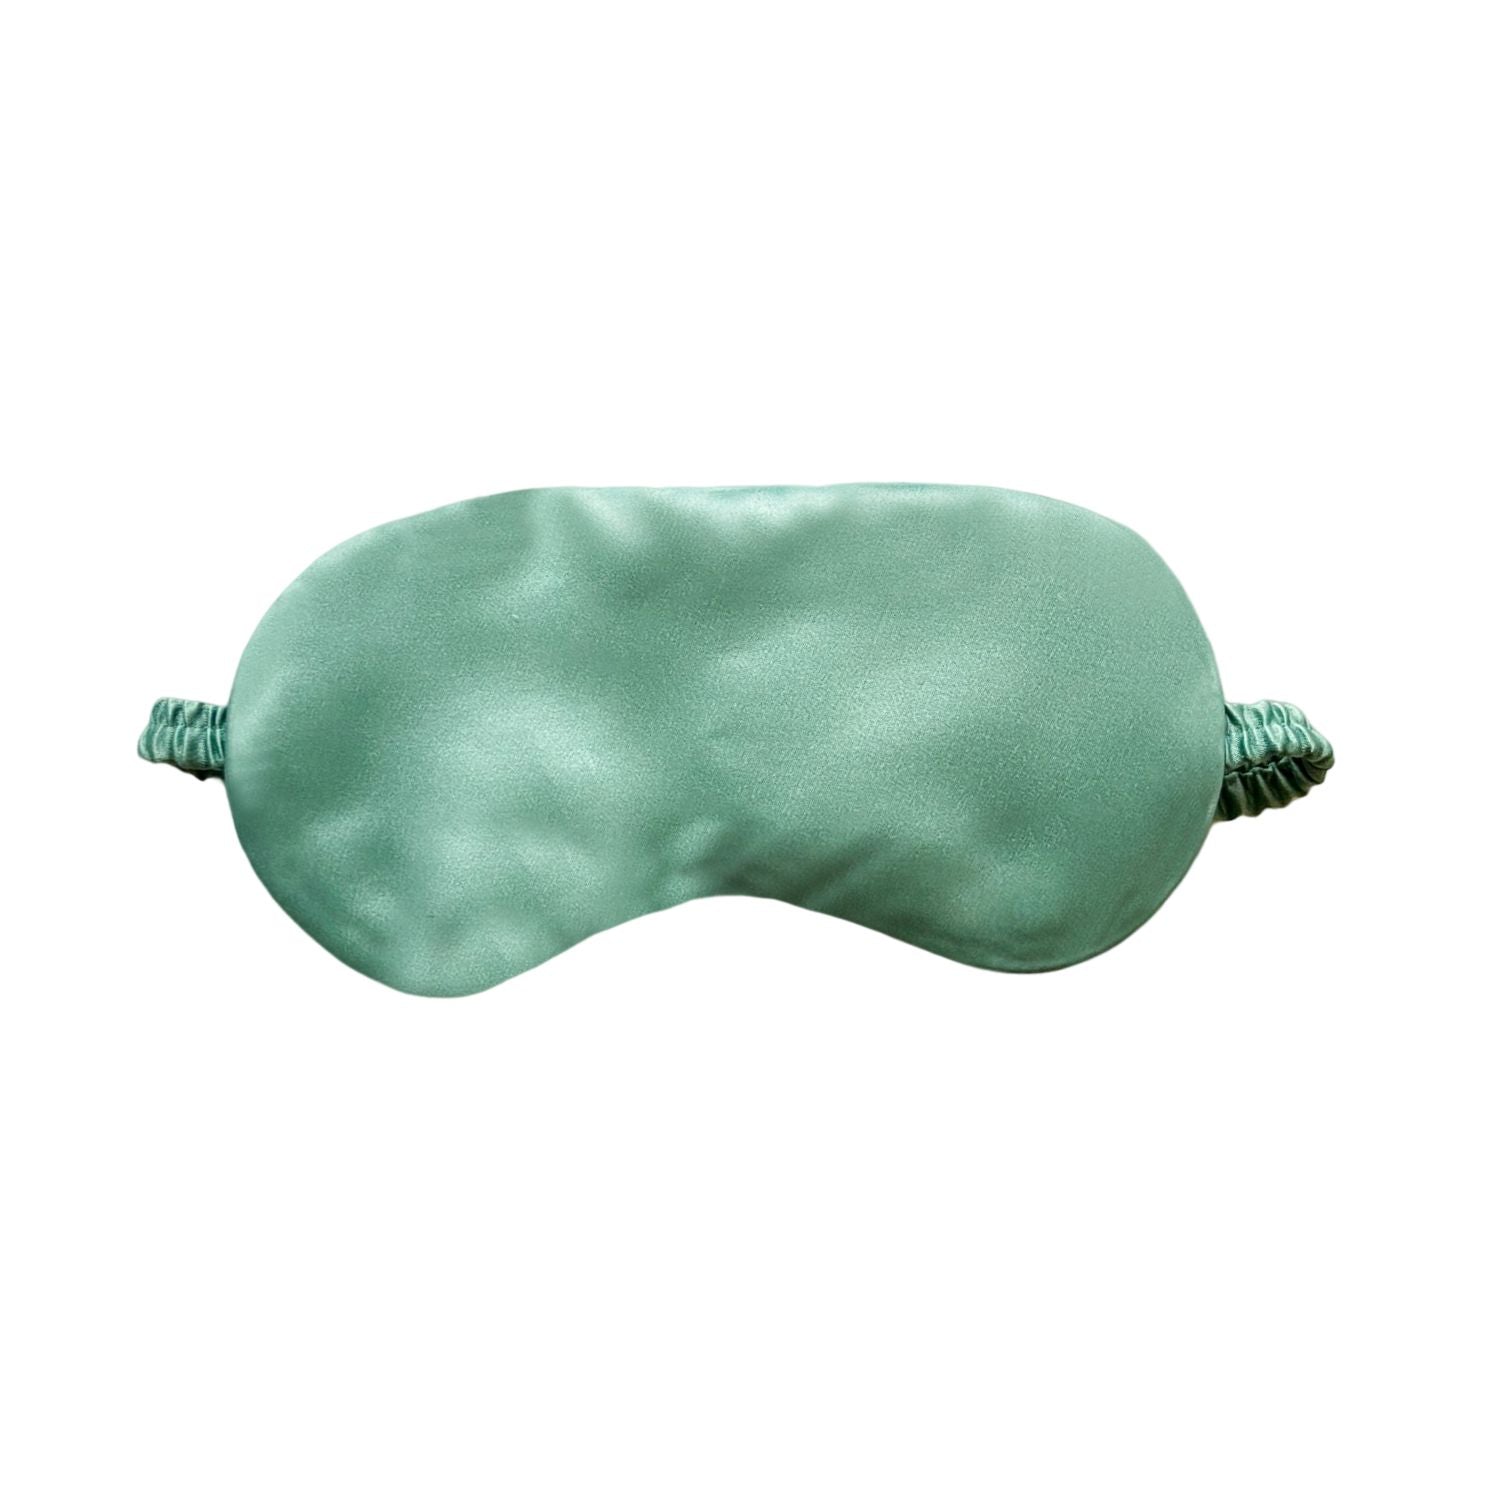 Eye Mask for Sleeping, Green Light Blocking Sleep Mask, Soft and Comfortable Night Blindfold for Men Women, Eye Blinder for Travel/Sleeping/Shift Work/meditation (Pack of 1),